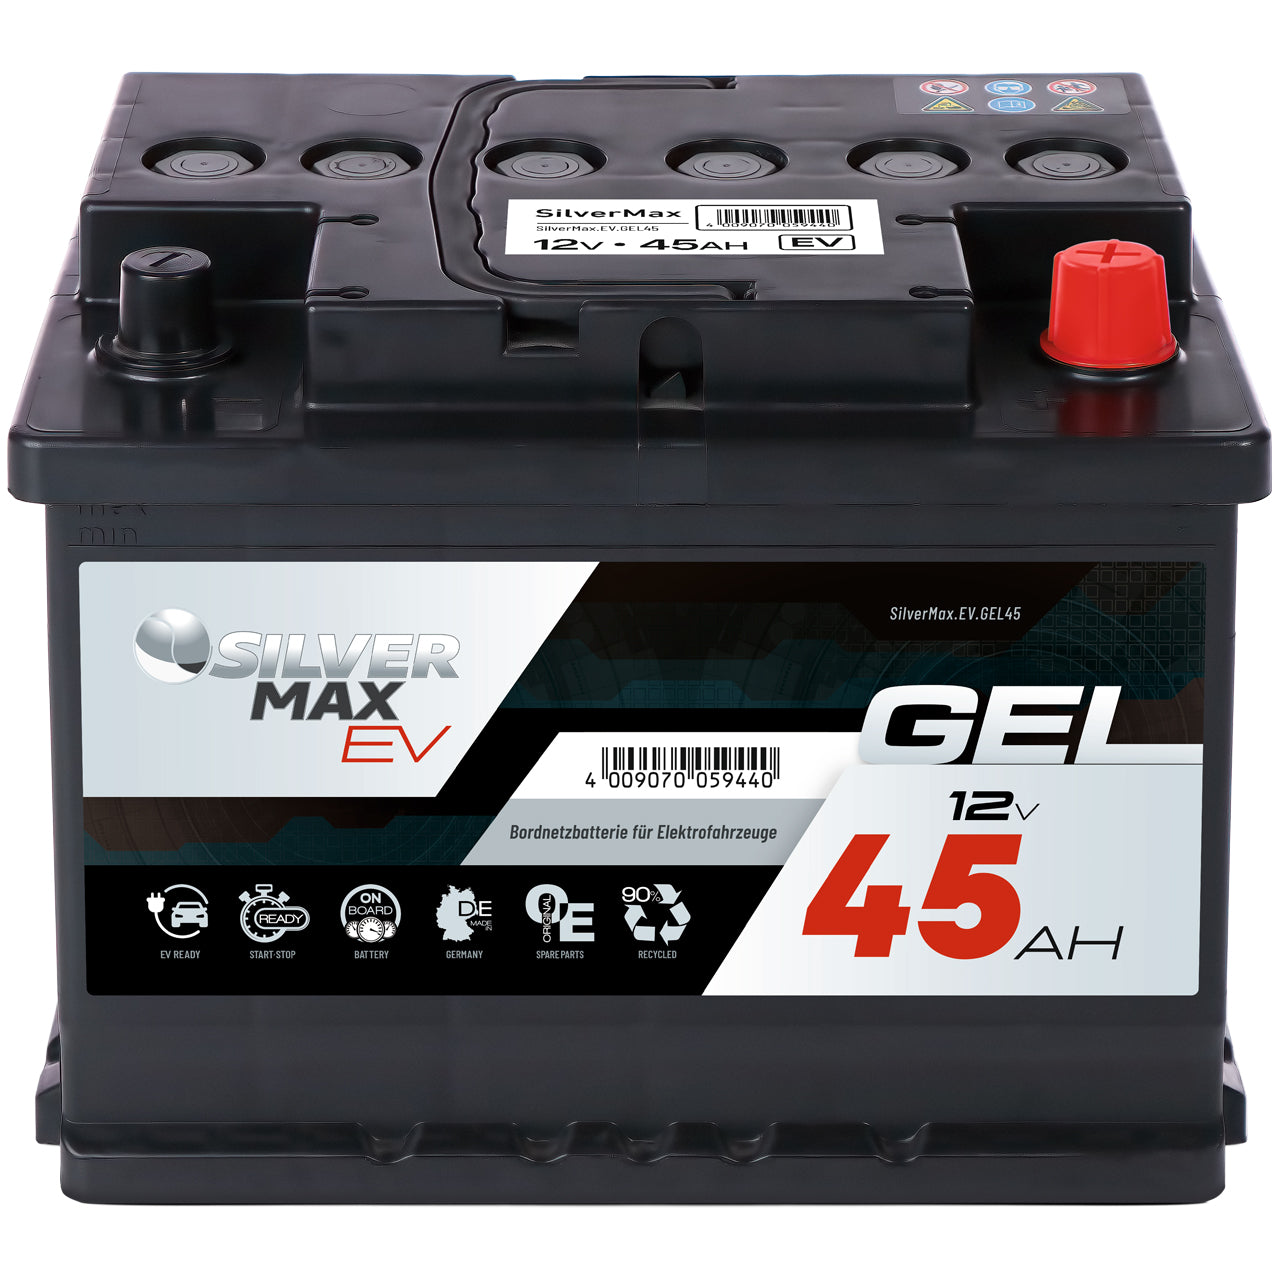 http://www.batterie-industrie-germany.de/cdn/shop/files/Bordnetzbatterie-E-Auto-Elektroauto-SilverMax.EV.GEL45-12V-45Ah-Front.jpg?v=1700744561